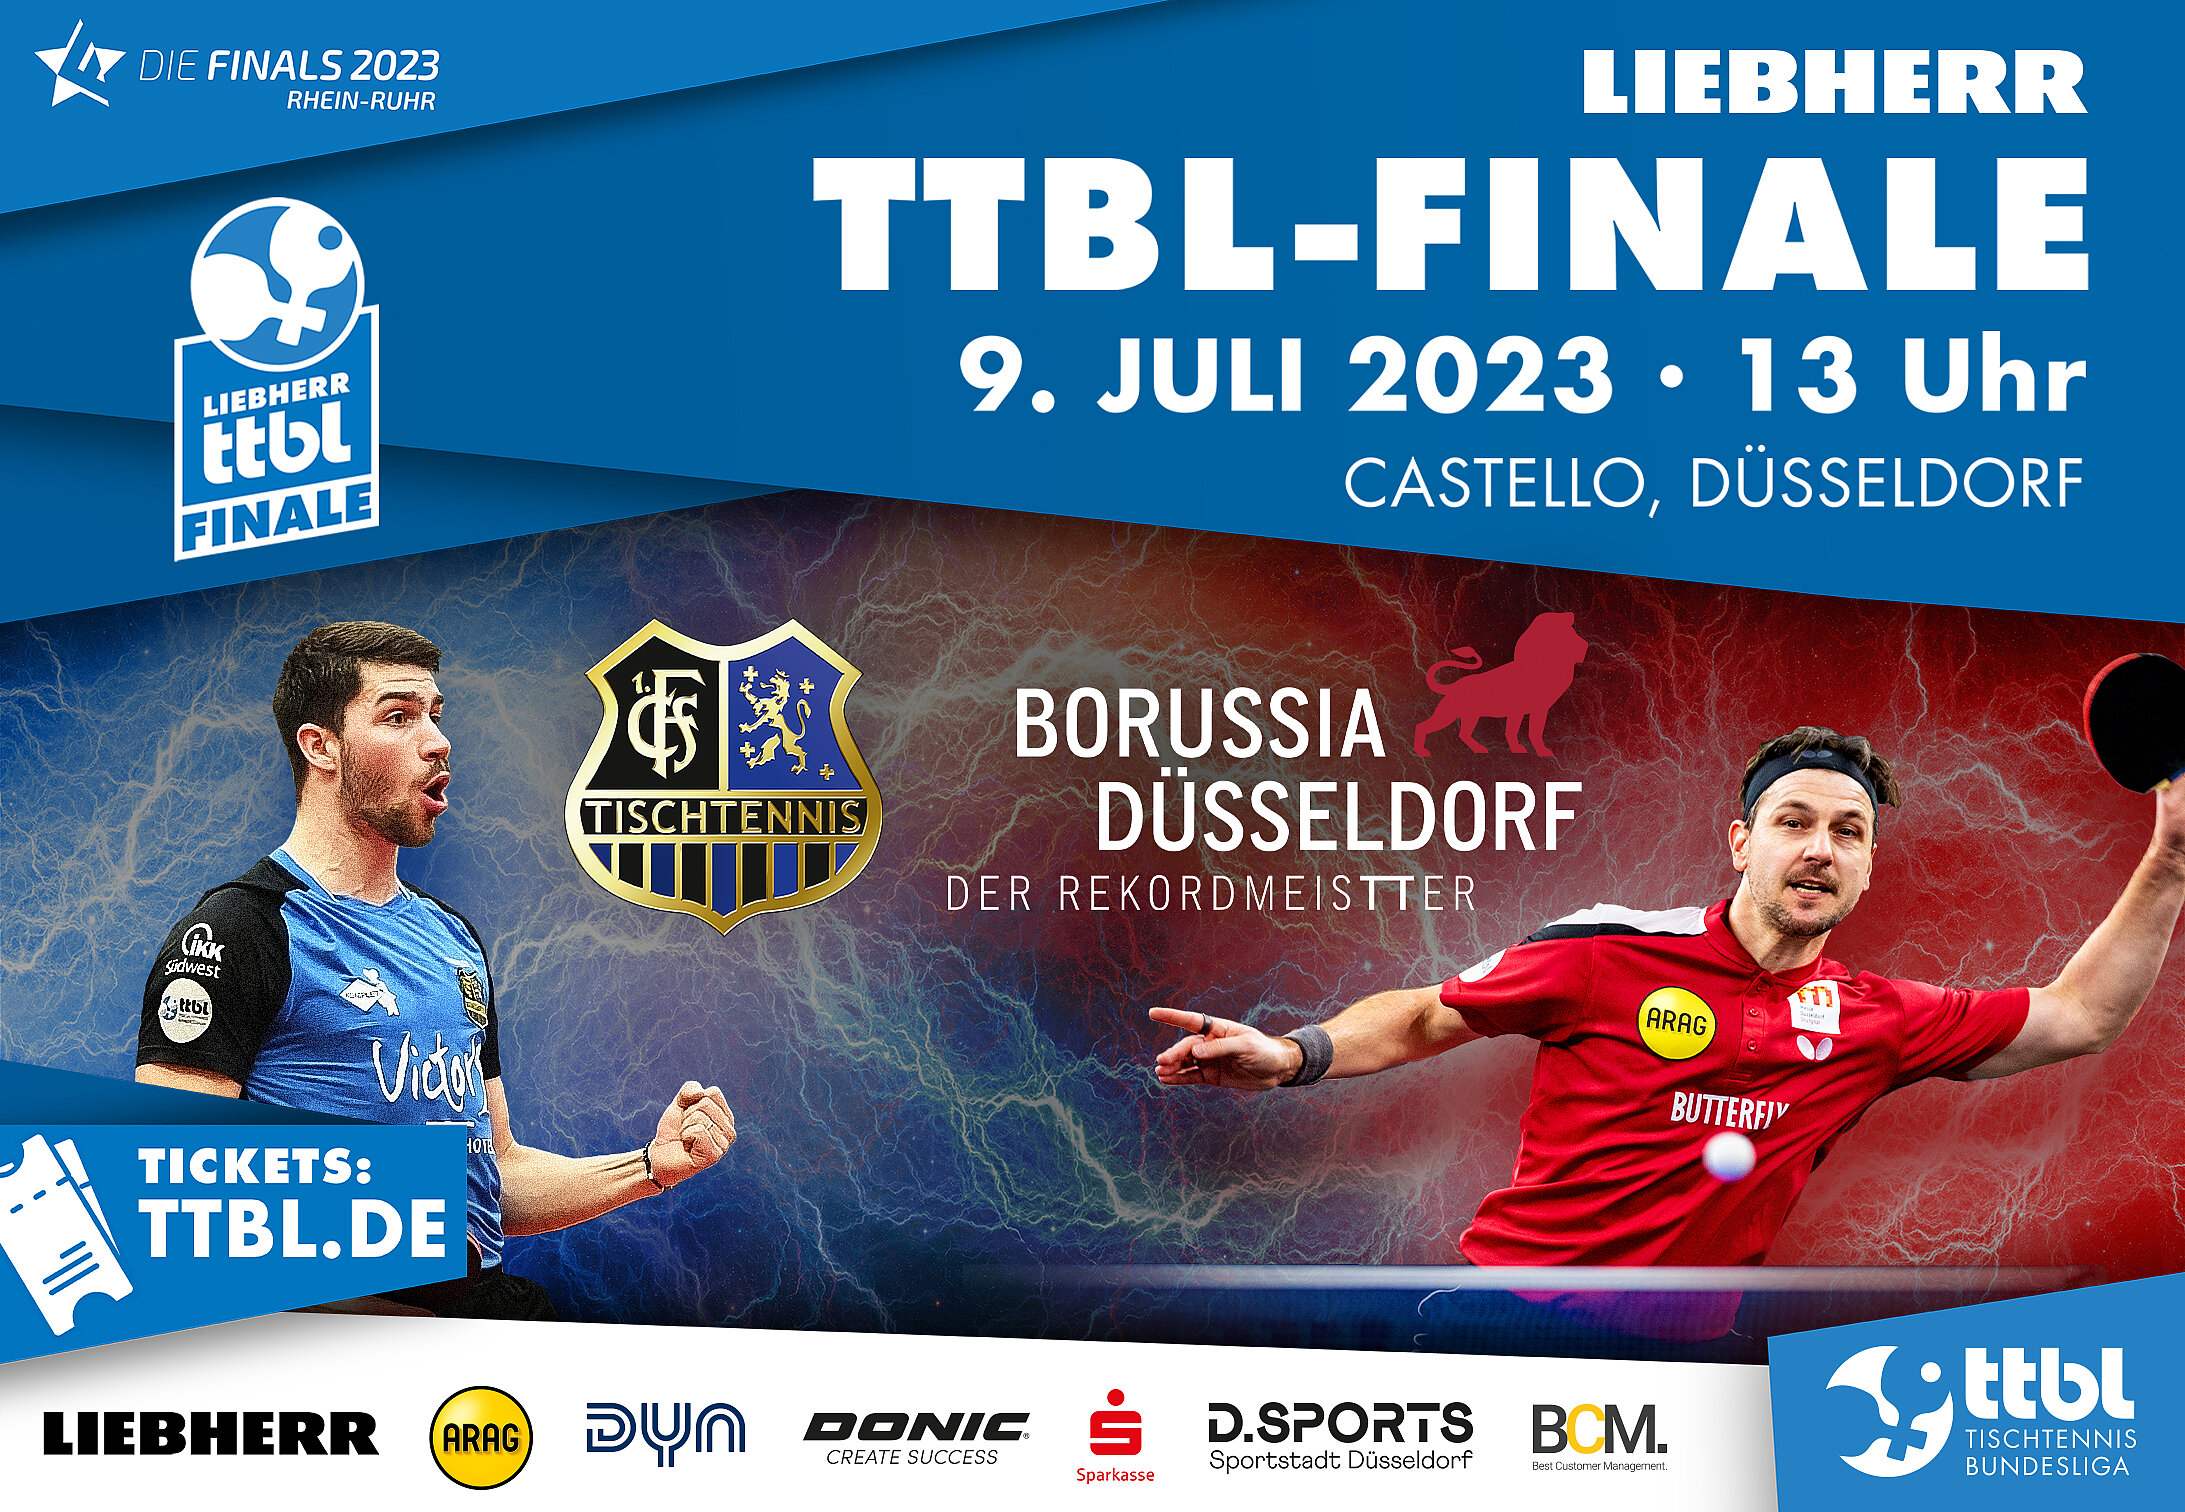 Liebherr TTBL-Finale 2023 Weltklasse-Tischtennis beim Showdown im Castello Düsseldorf